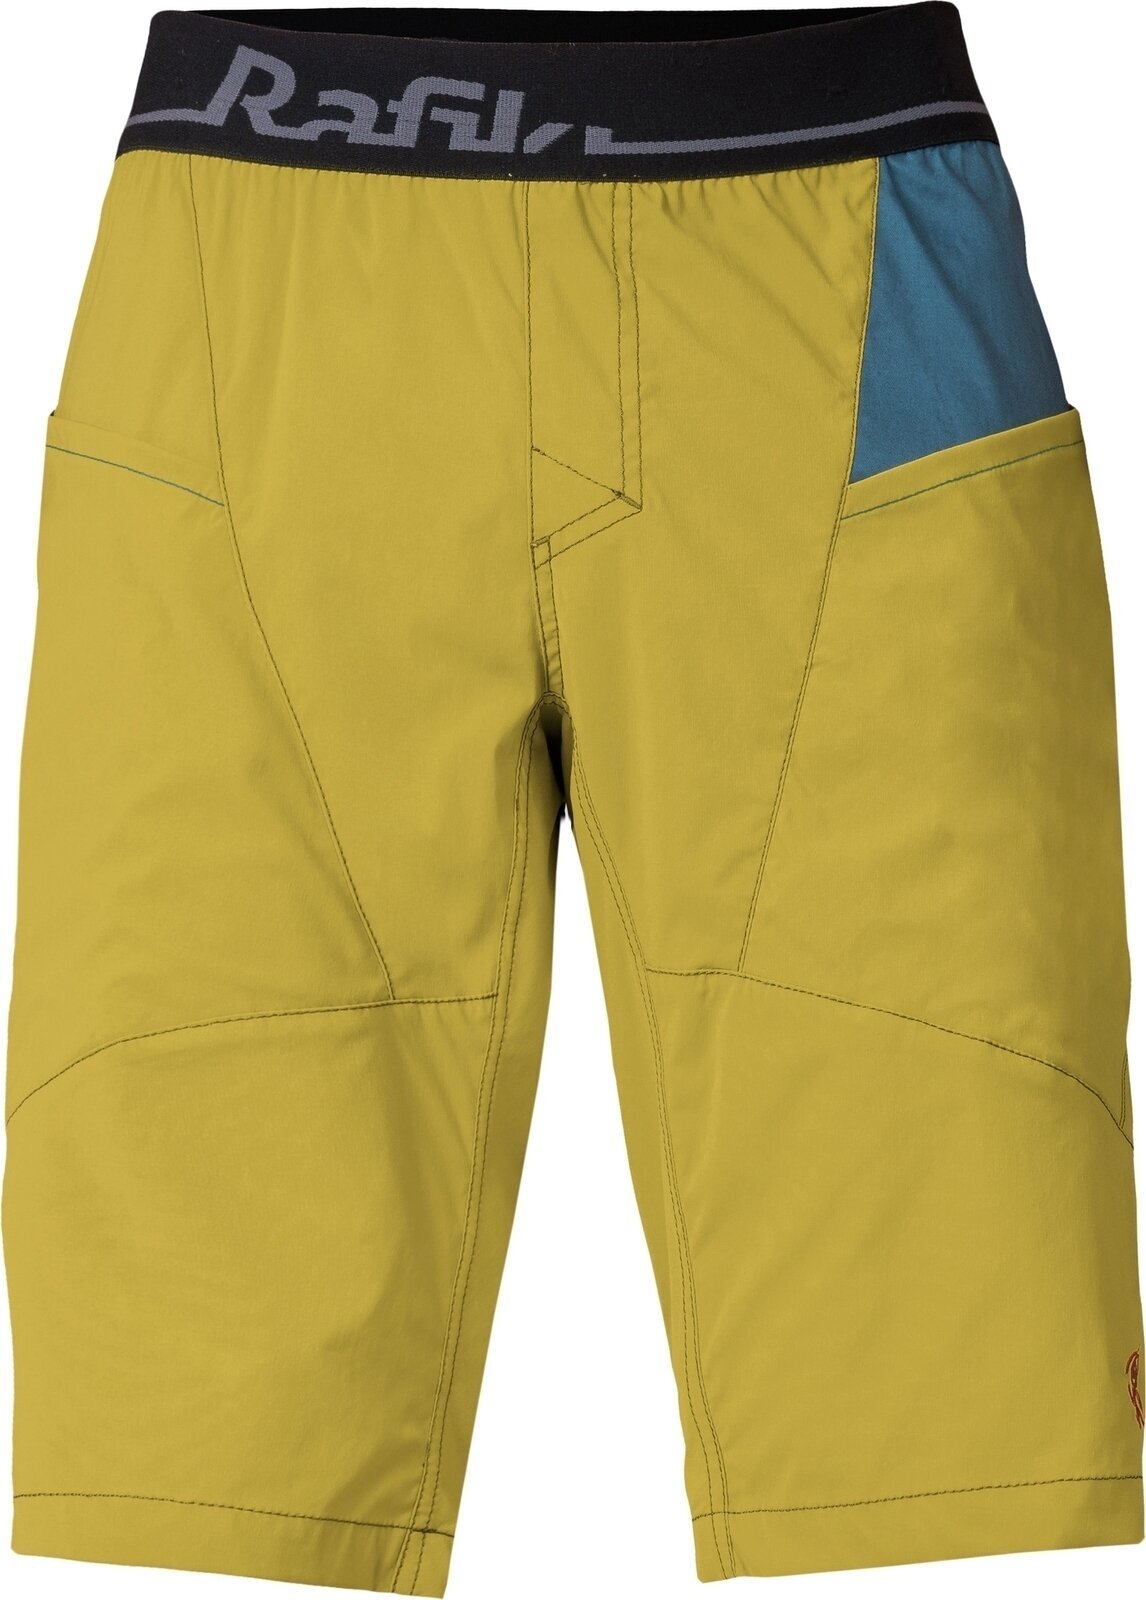 Spodenki outdoorowe Rafiki Megos Man Shorts Cress Green/Stargazer L Spodenki outdoorowe